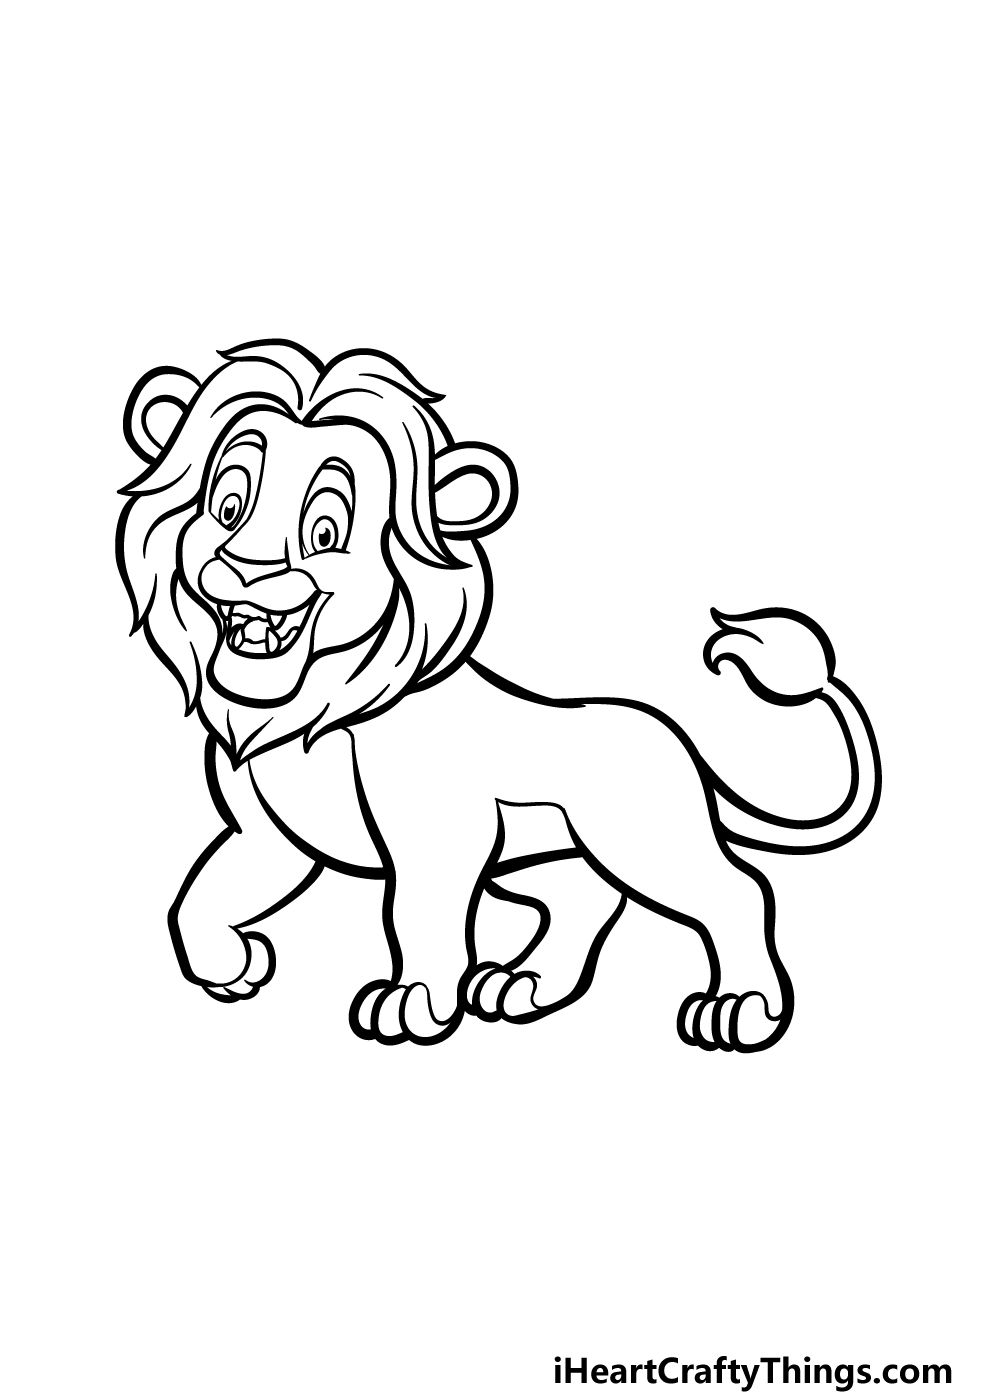 how to draw a cartoon lion step 5